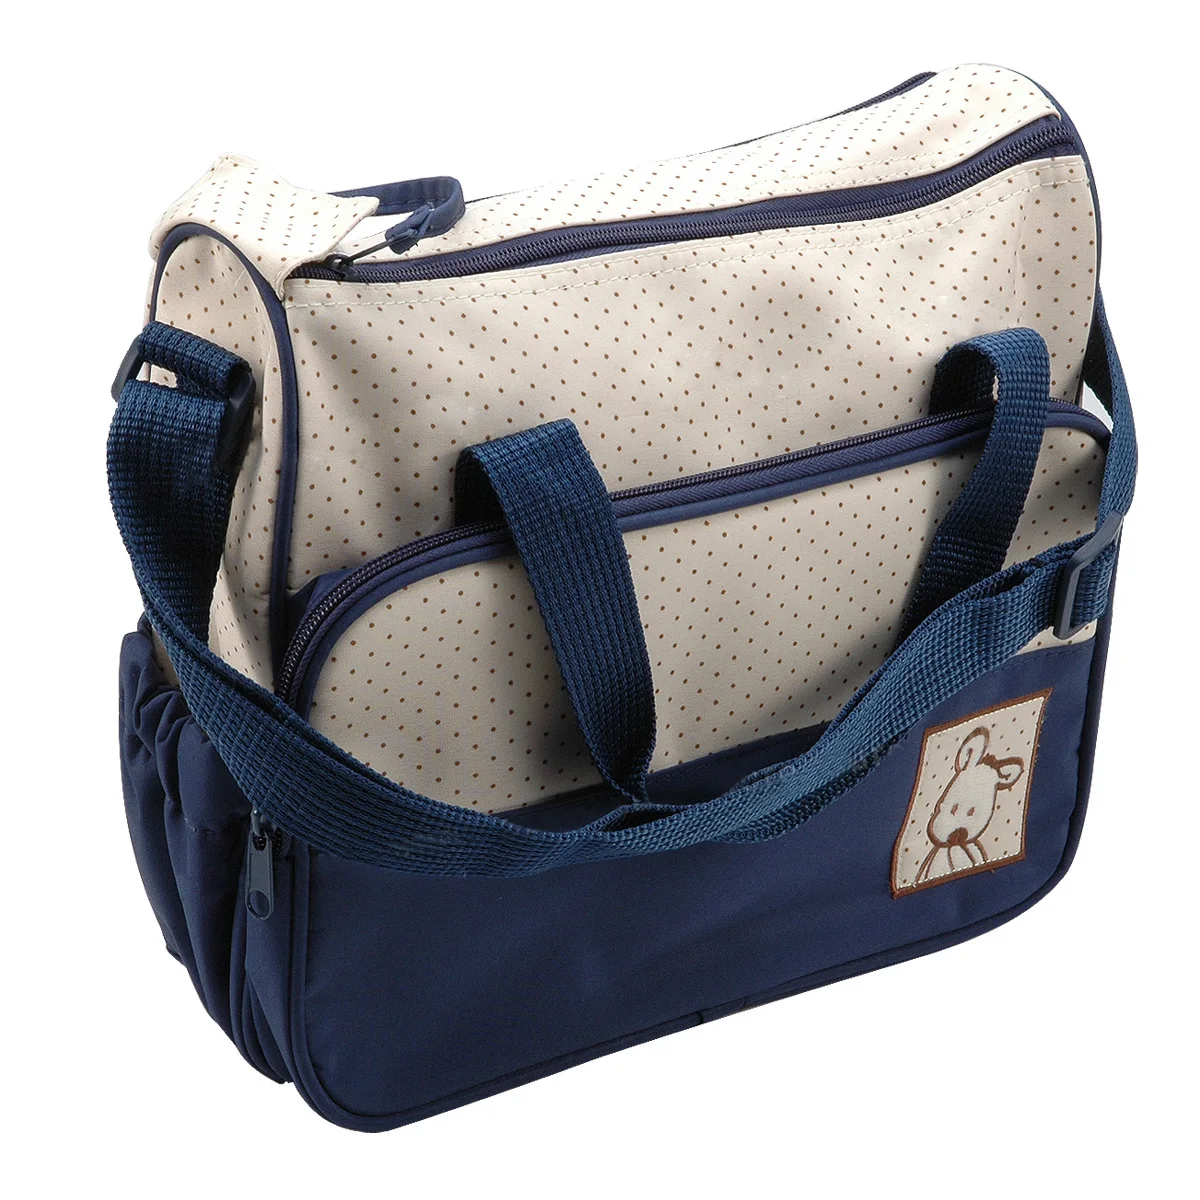 ABWE лучшие продажи сумки детские синие сумки для дома и улицы + сумка Ланч мешок и бутылка + слой